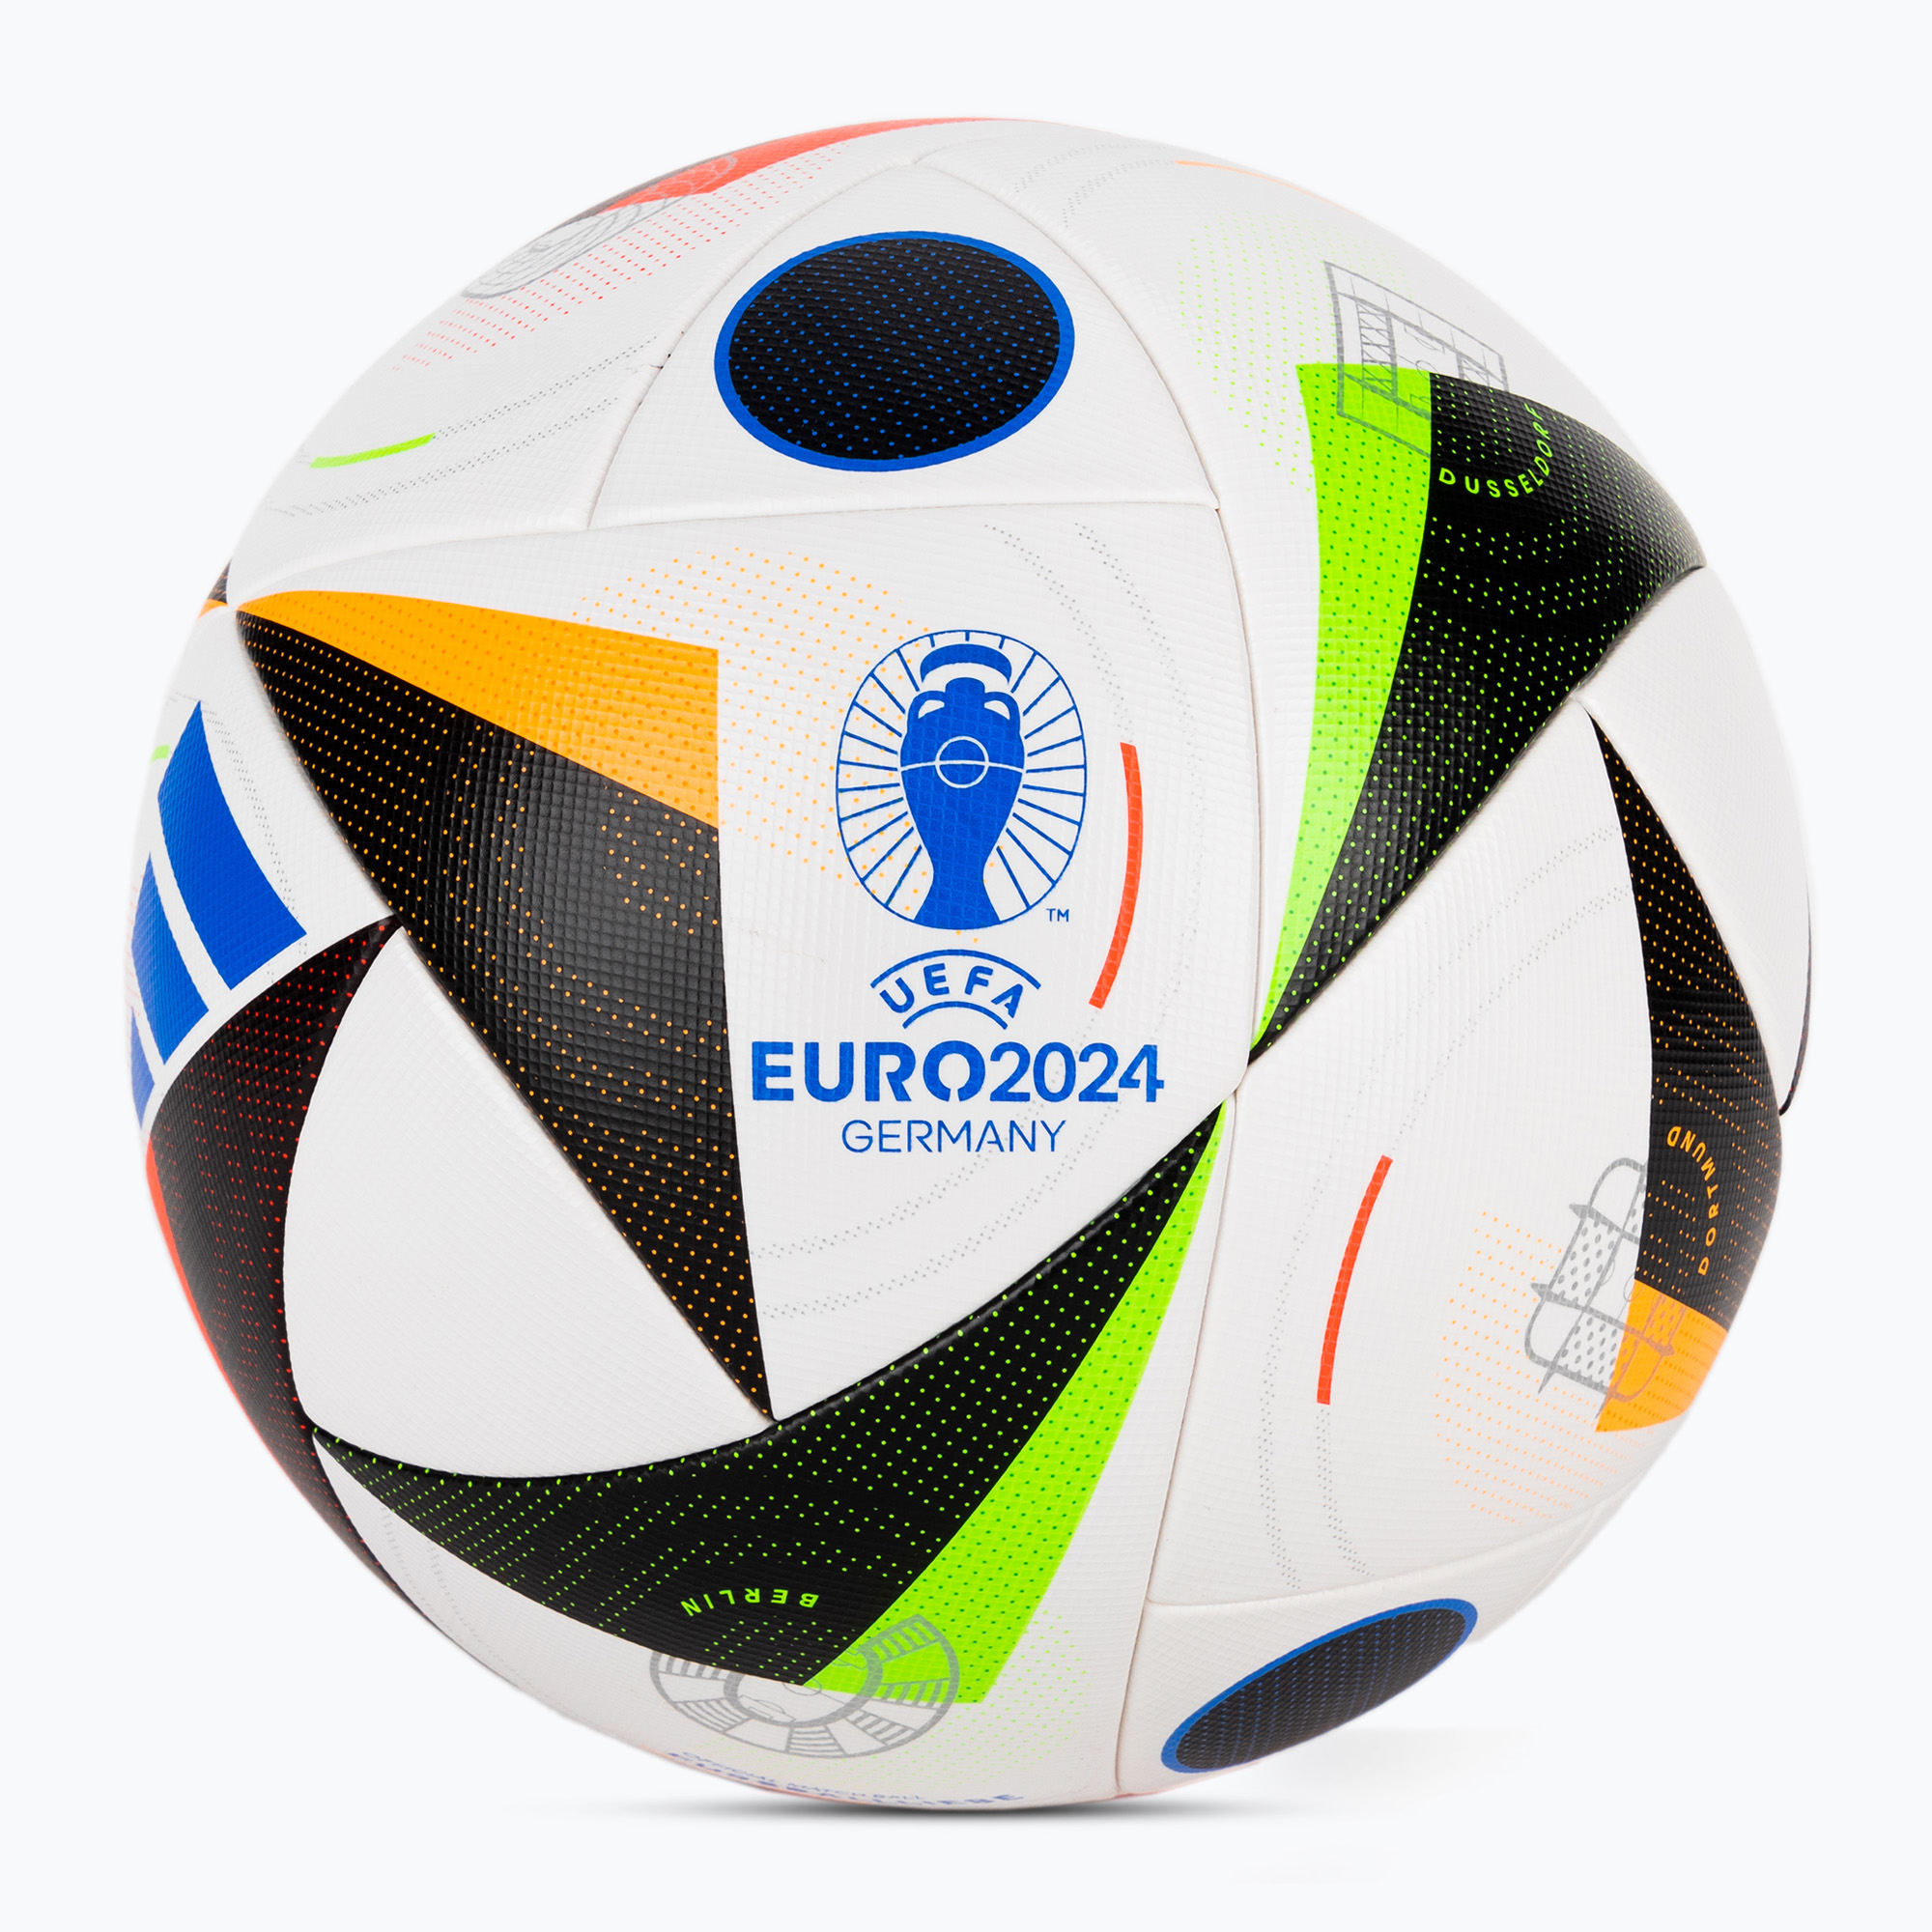 adidas Fussballliebe Competition Euro 2024 white/black/glow blue size 4 football